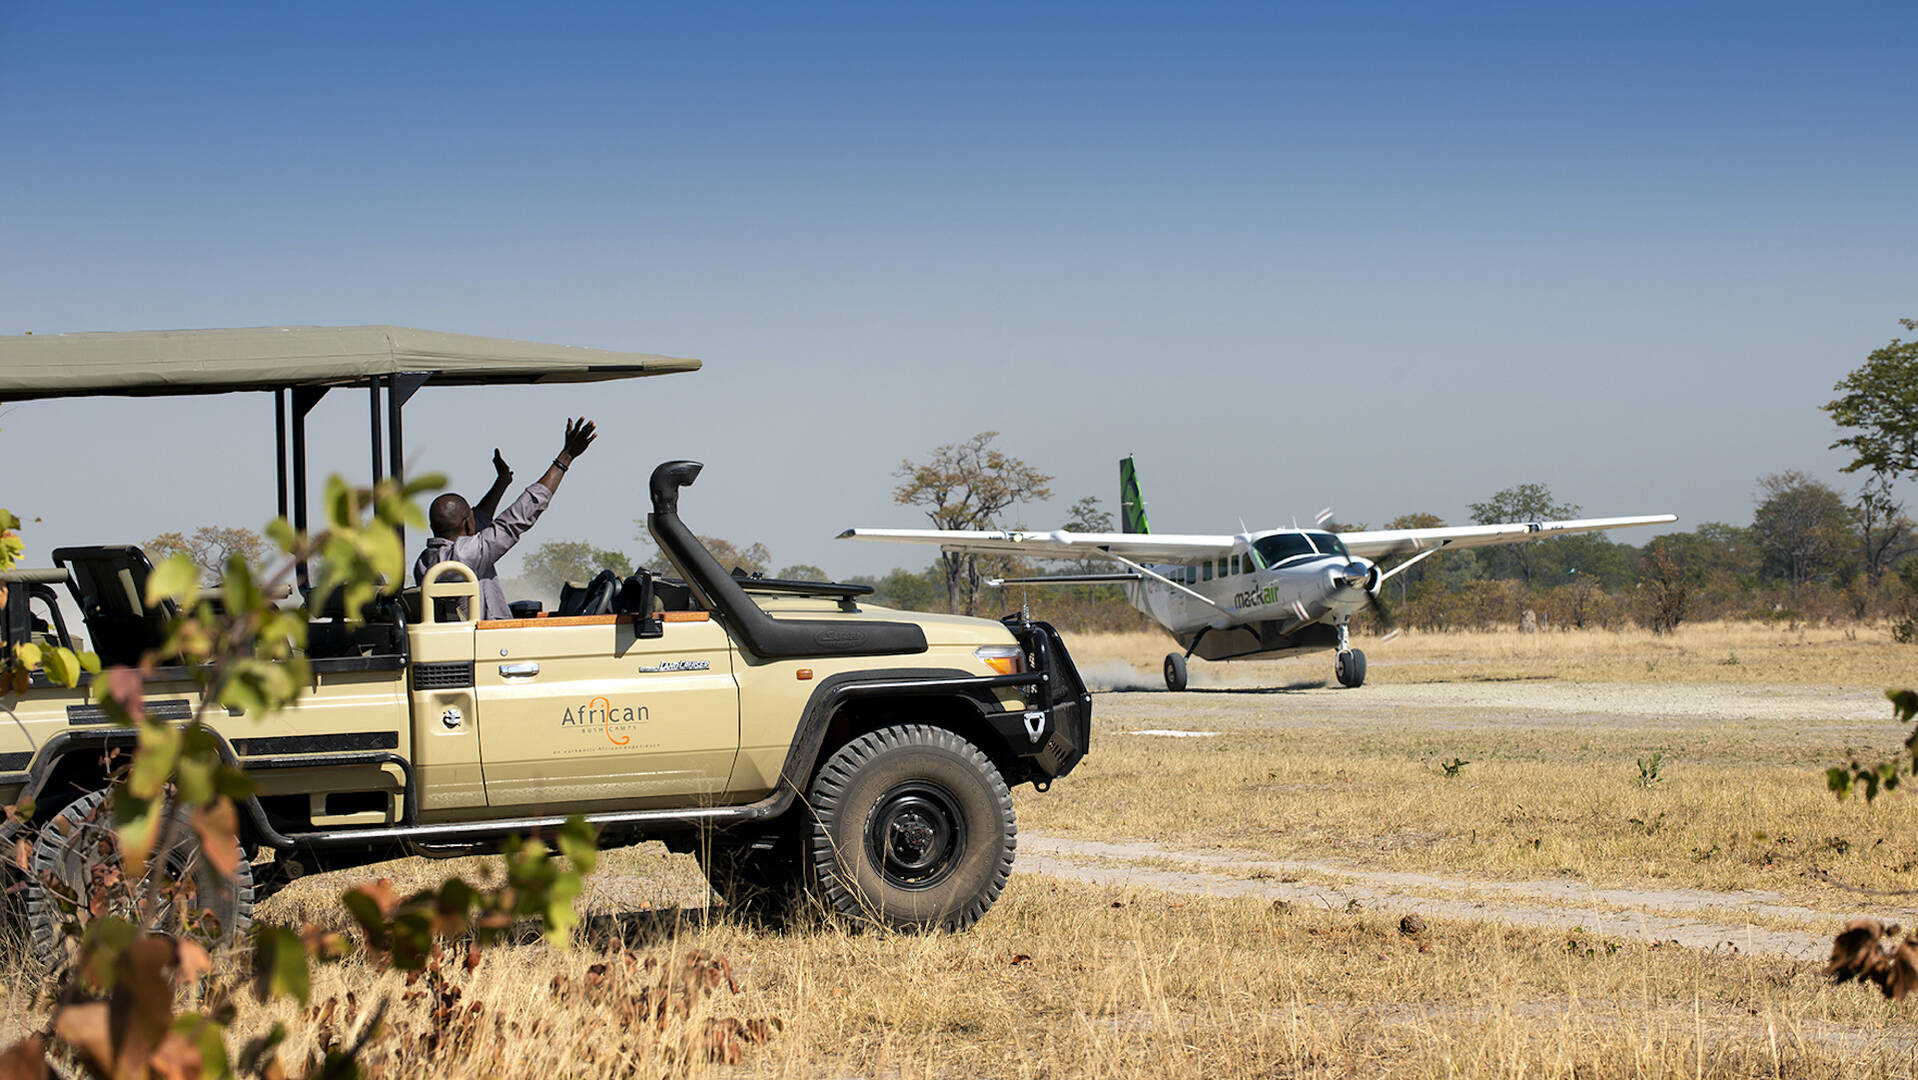 Types of Botswana safaris